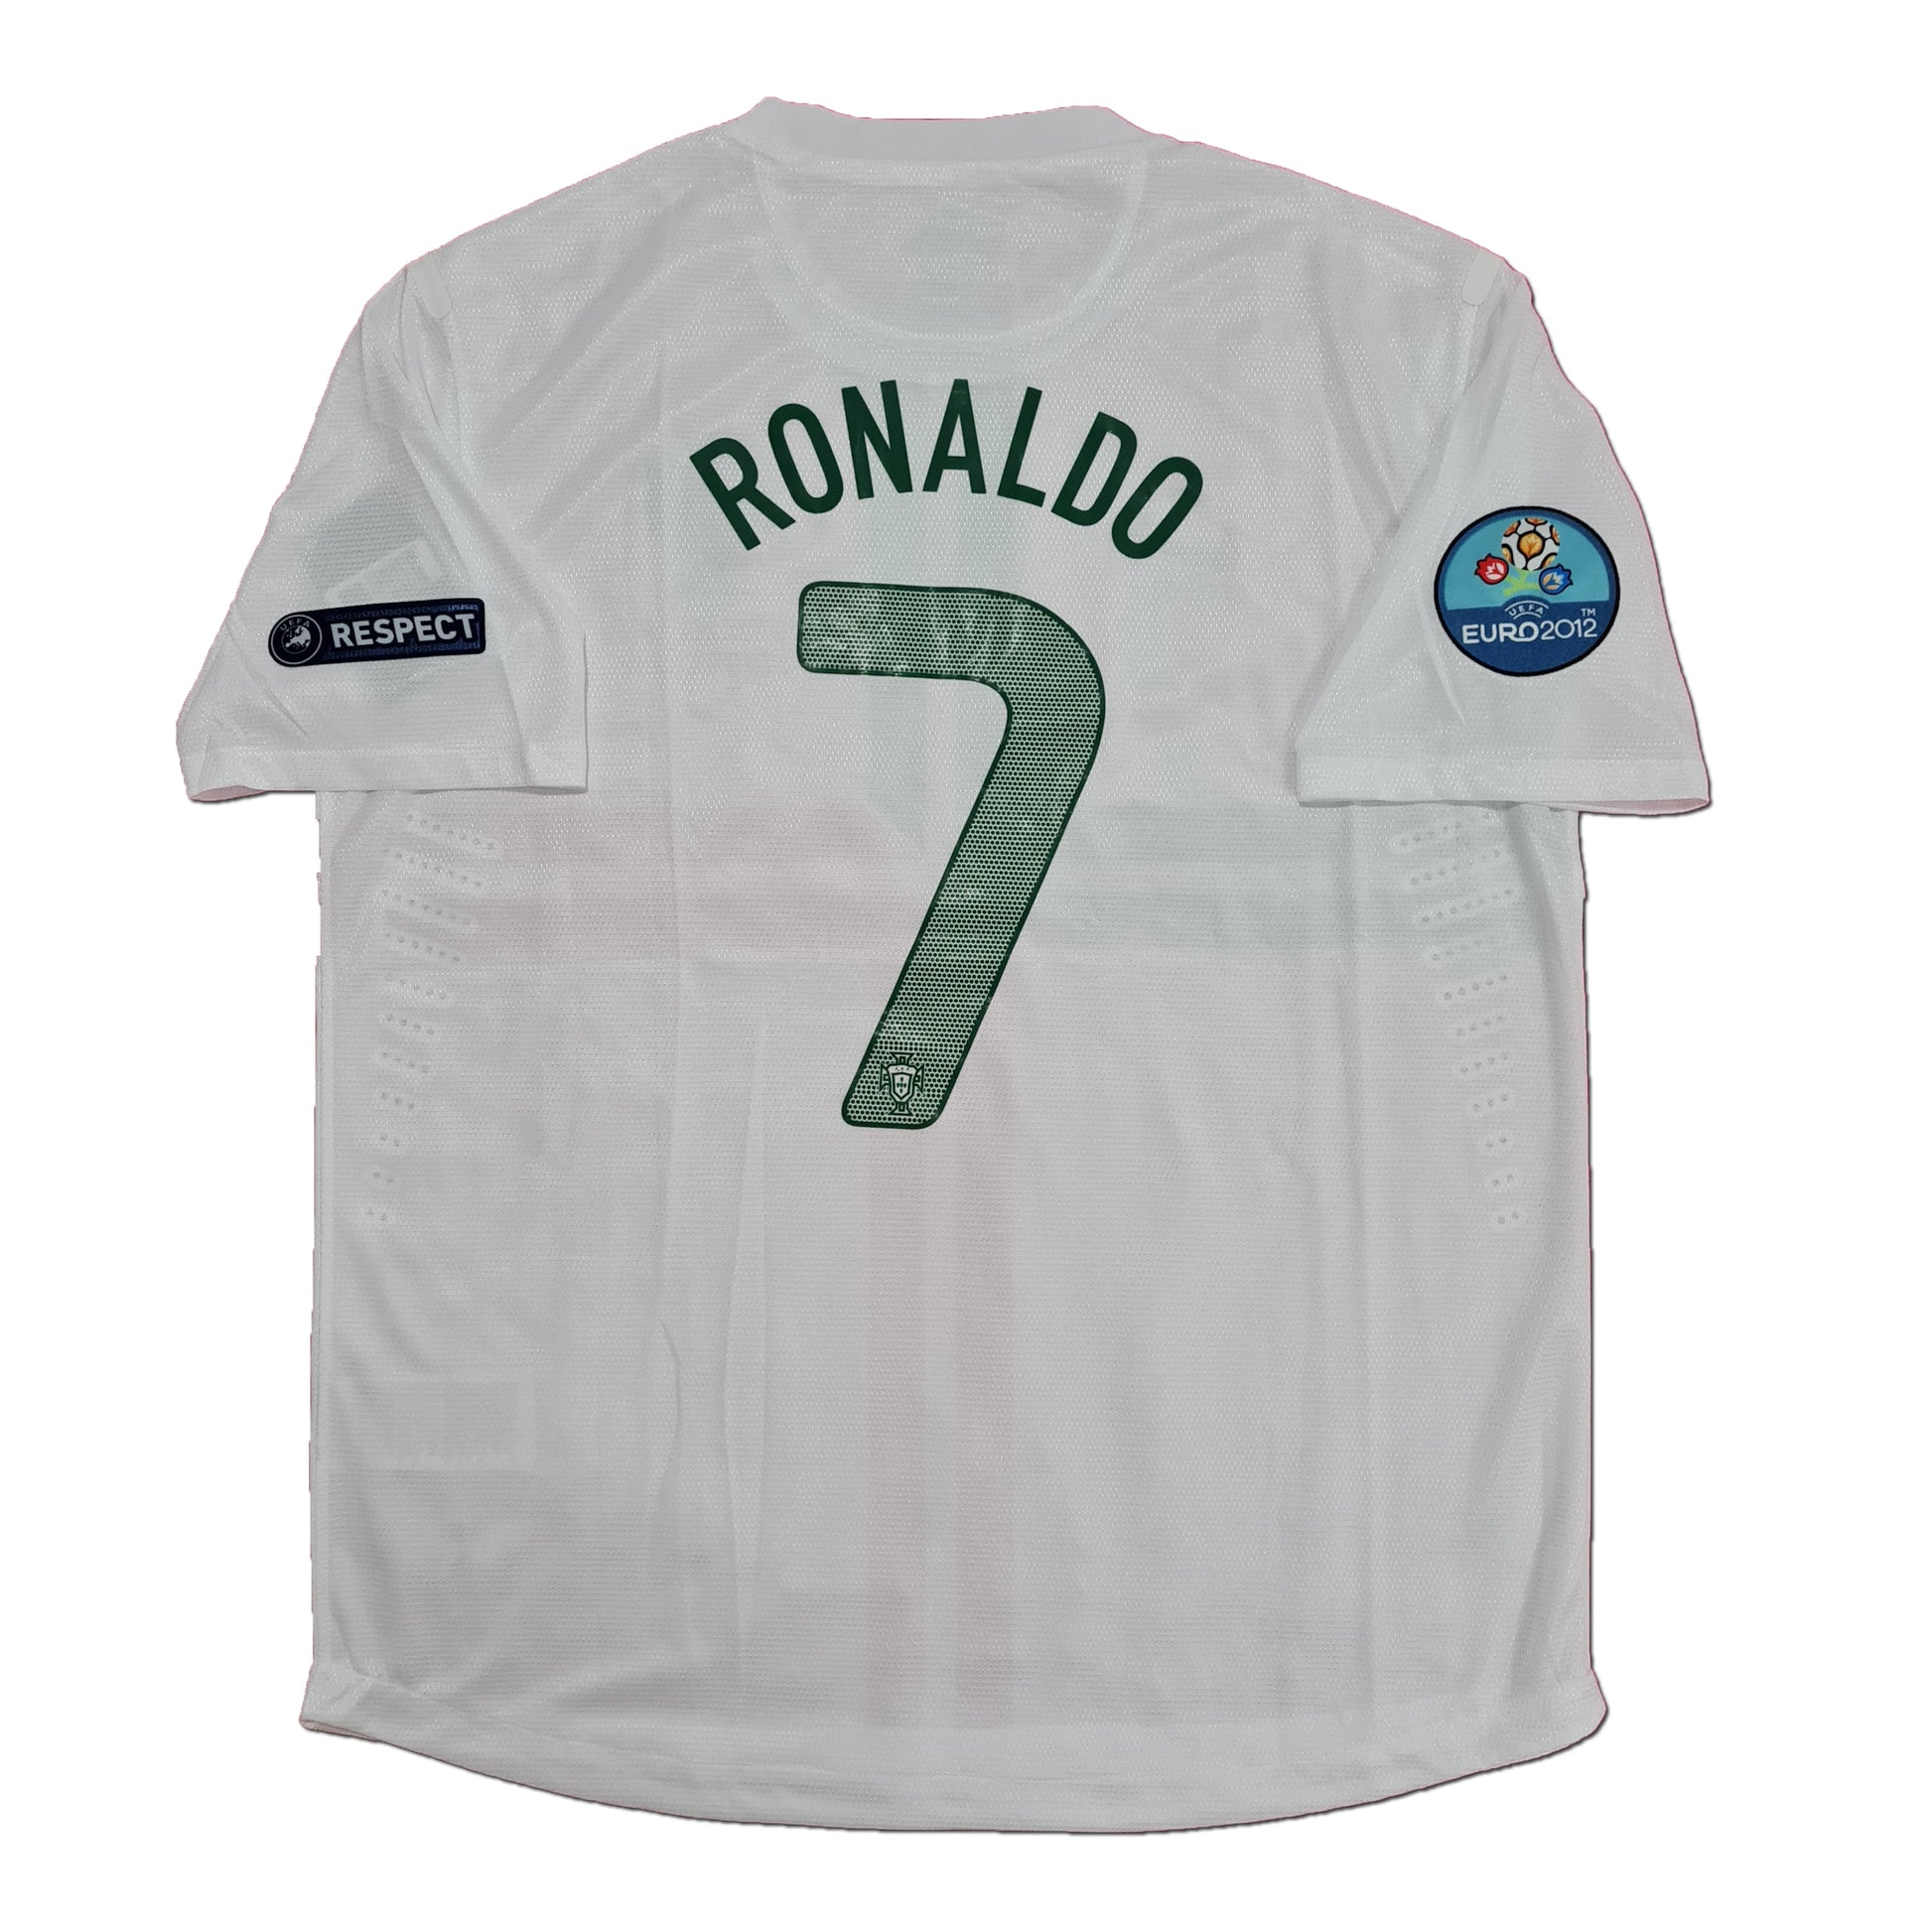 Portugal Suplente 2012 - Ronaldo - Thunder Internacional